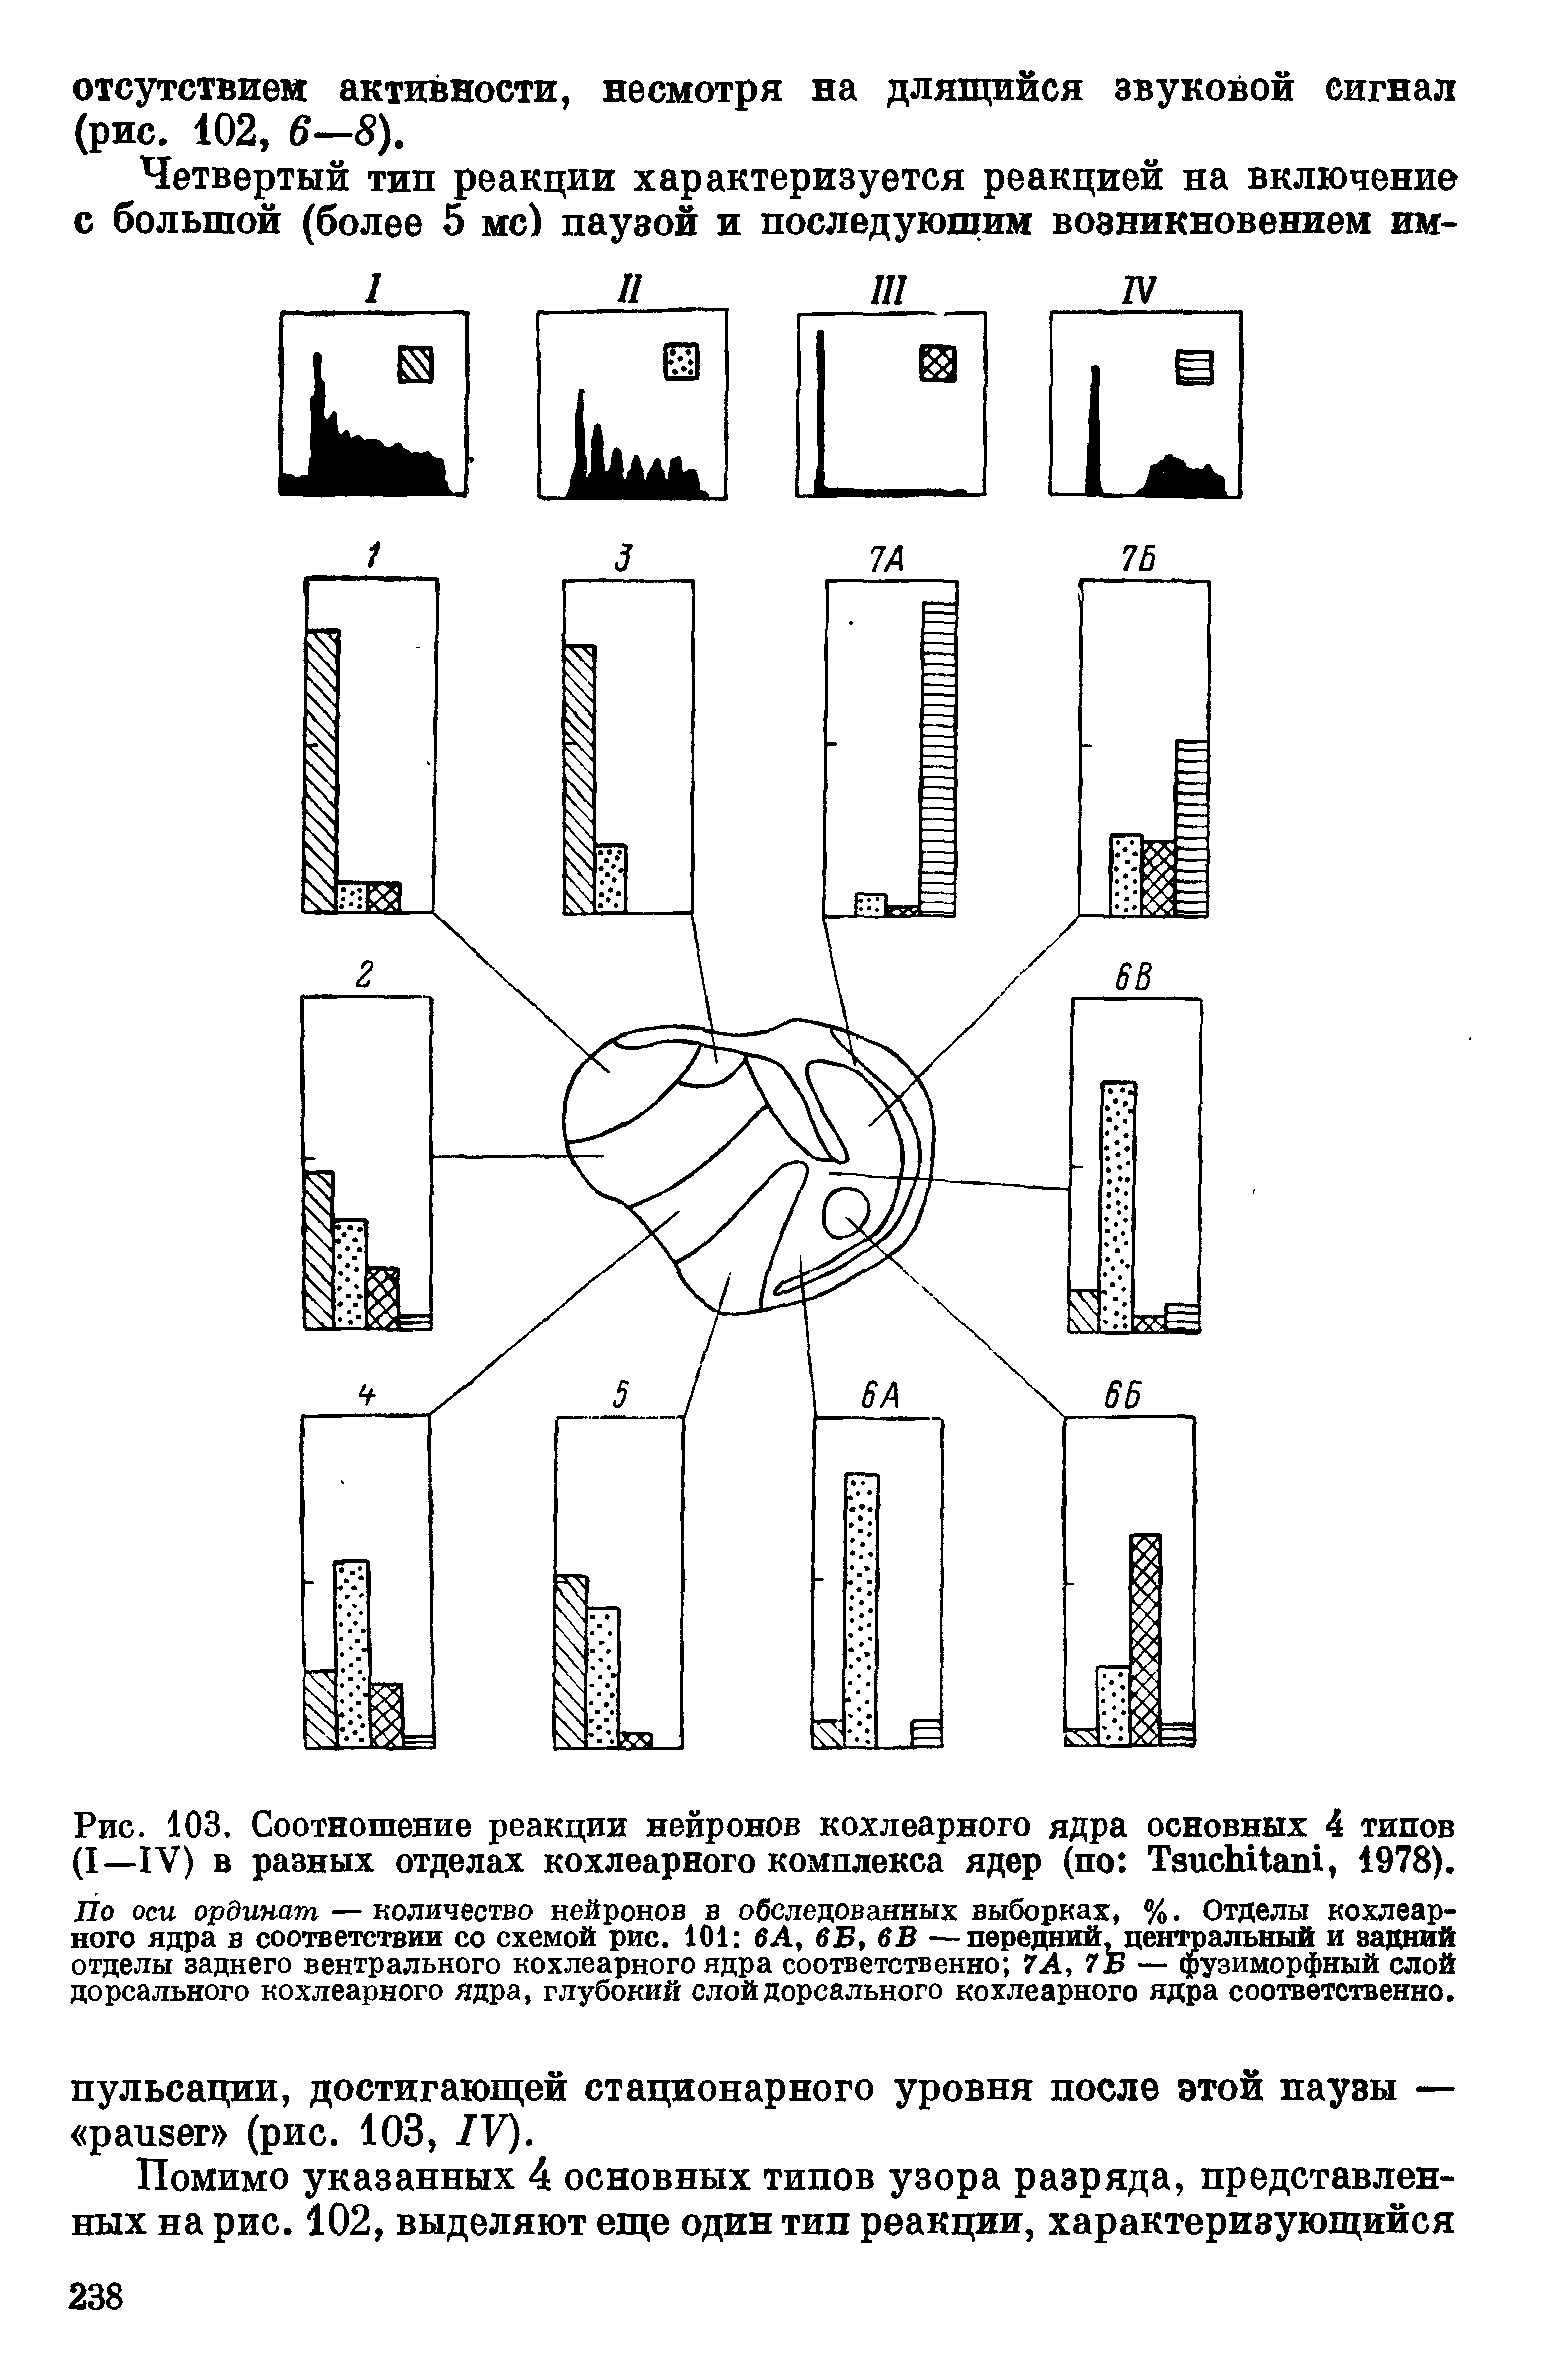 Рис. 103. Соотношение реакции нейронов кохлеарного ядра основных 4 типов (I—IV) в разных отделах кохлеарного комплекса ядер (по Tsu hitani, 1978).
